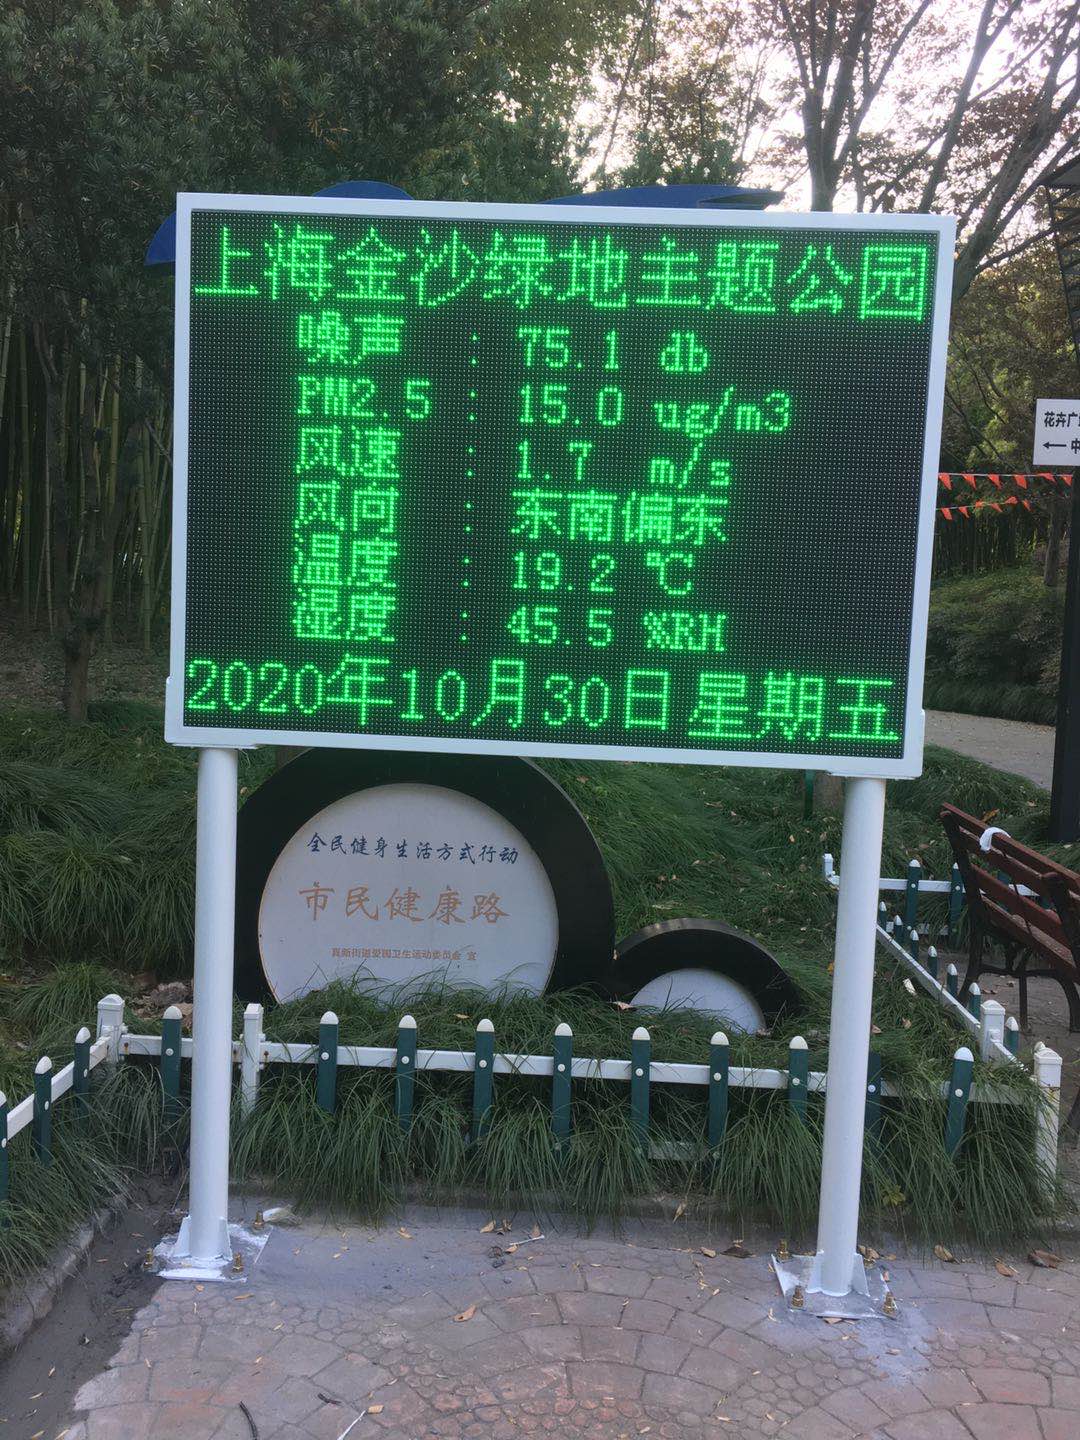  上海市公园噪声环境监测系统安装案例